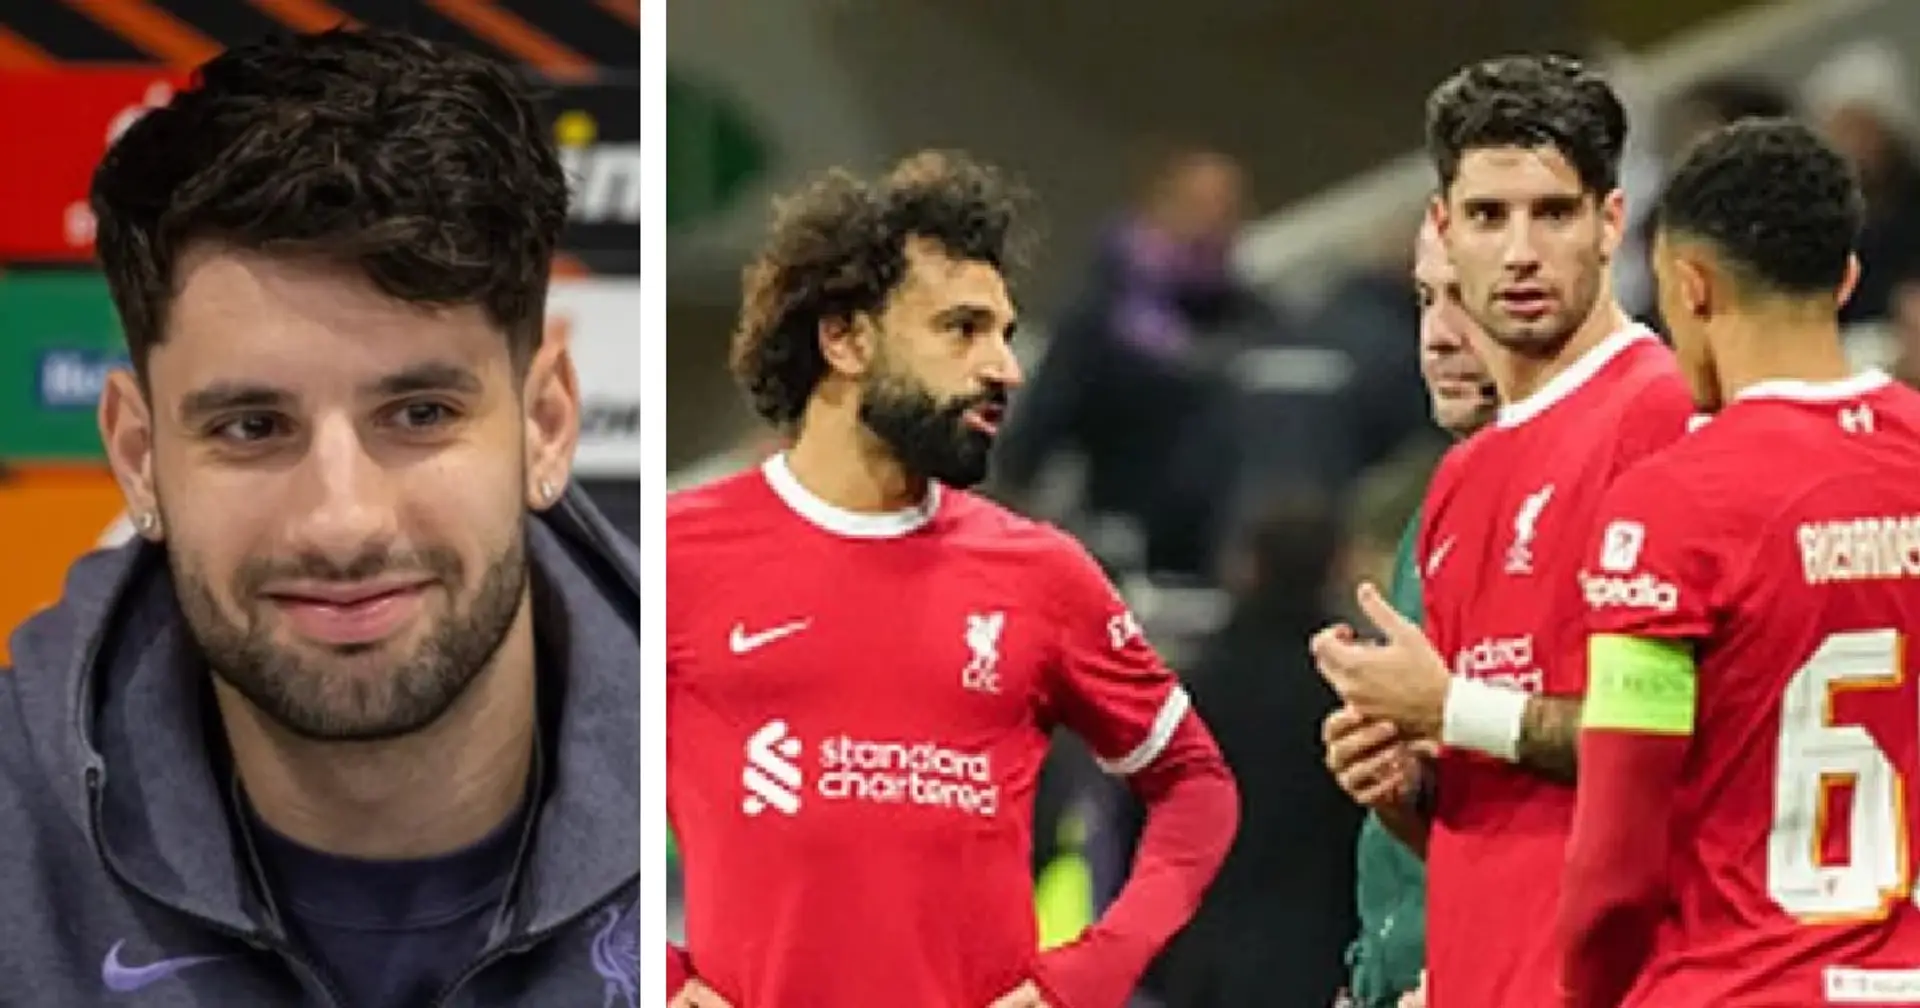 'We hang out quite a bit' - Szoboszlai names best Liverpool teammate